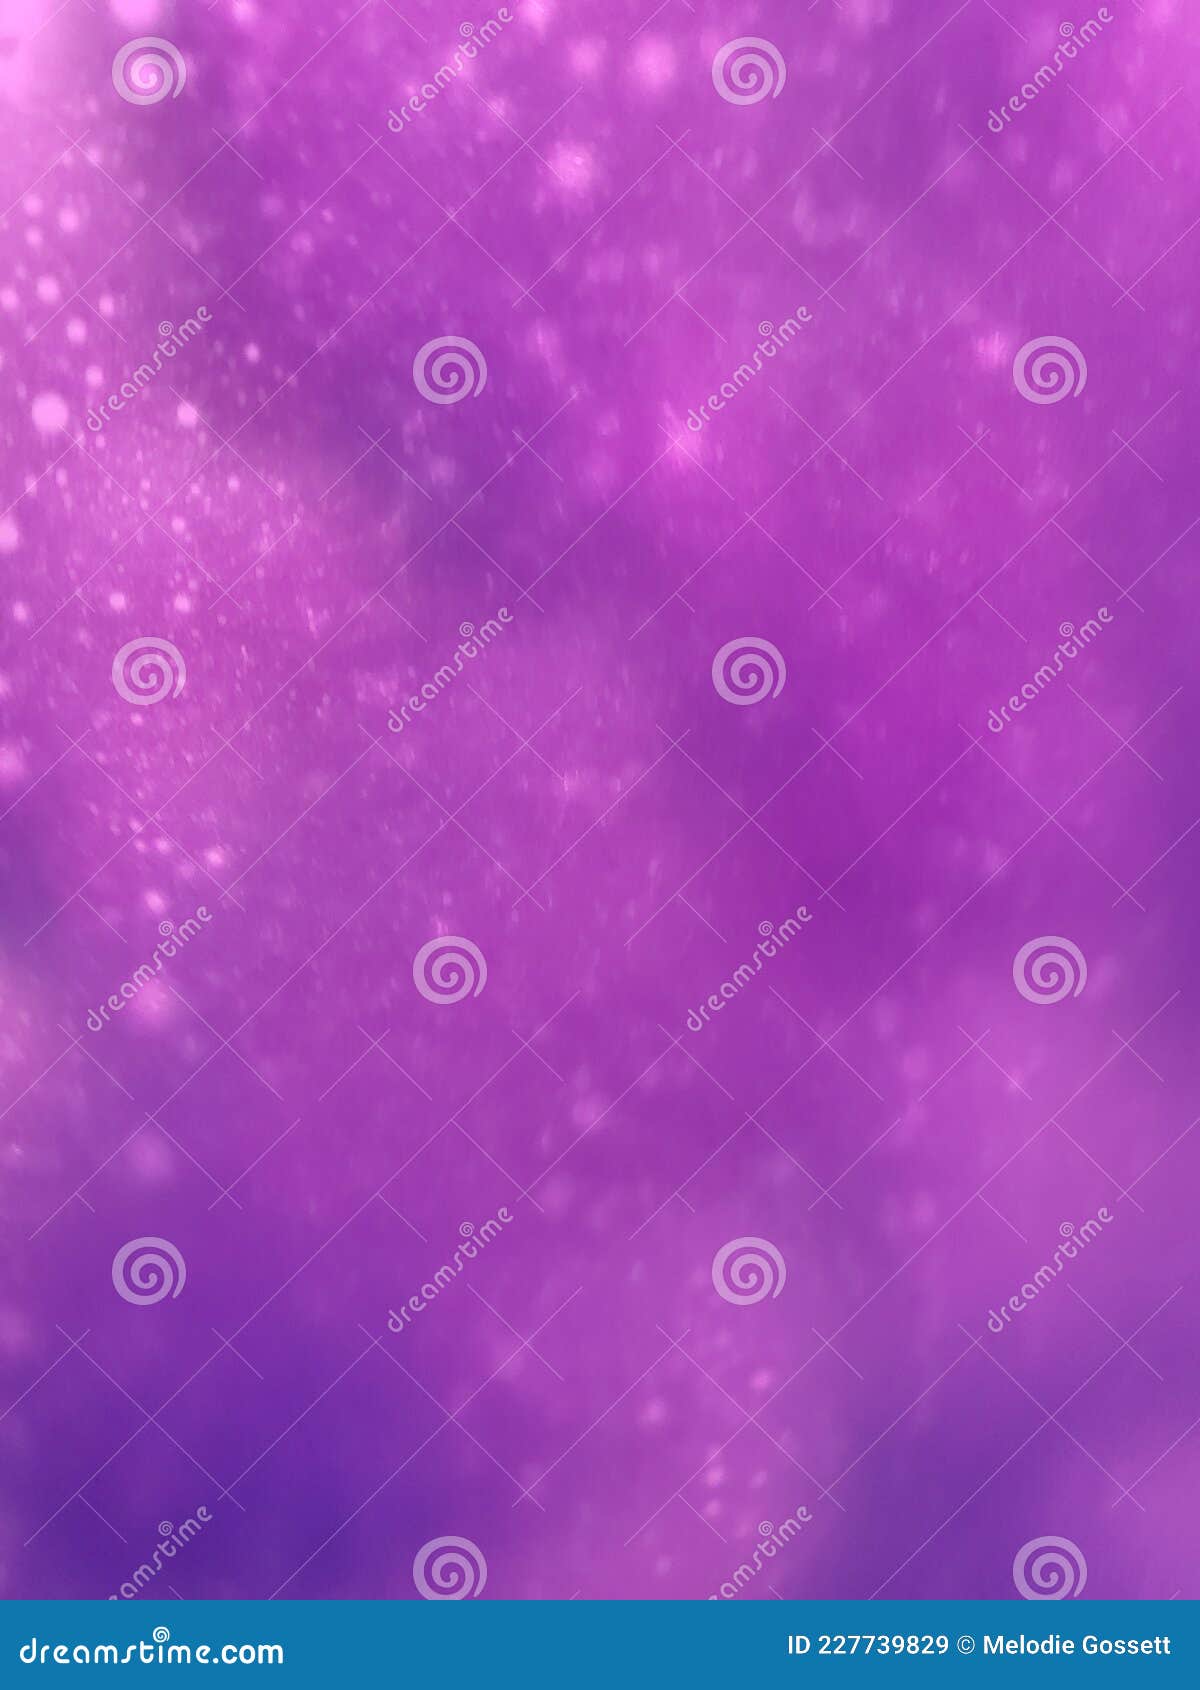 purple prose background photo